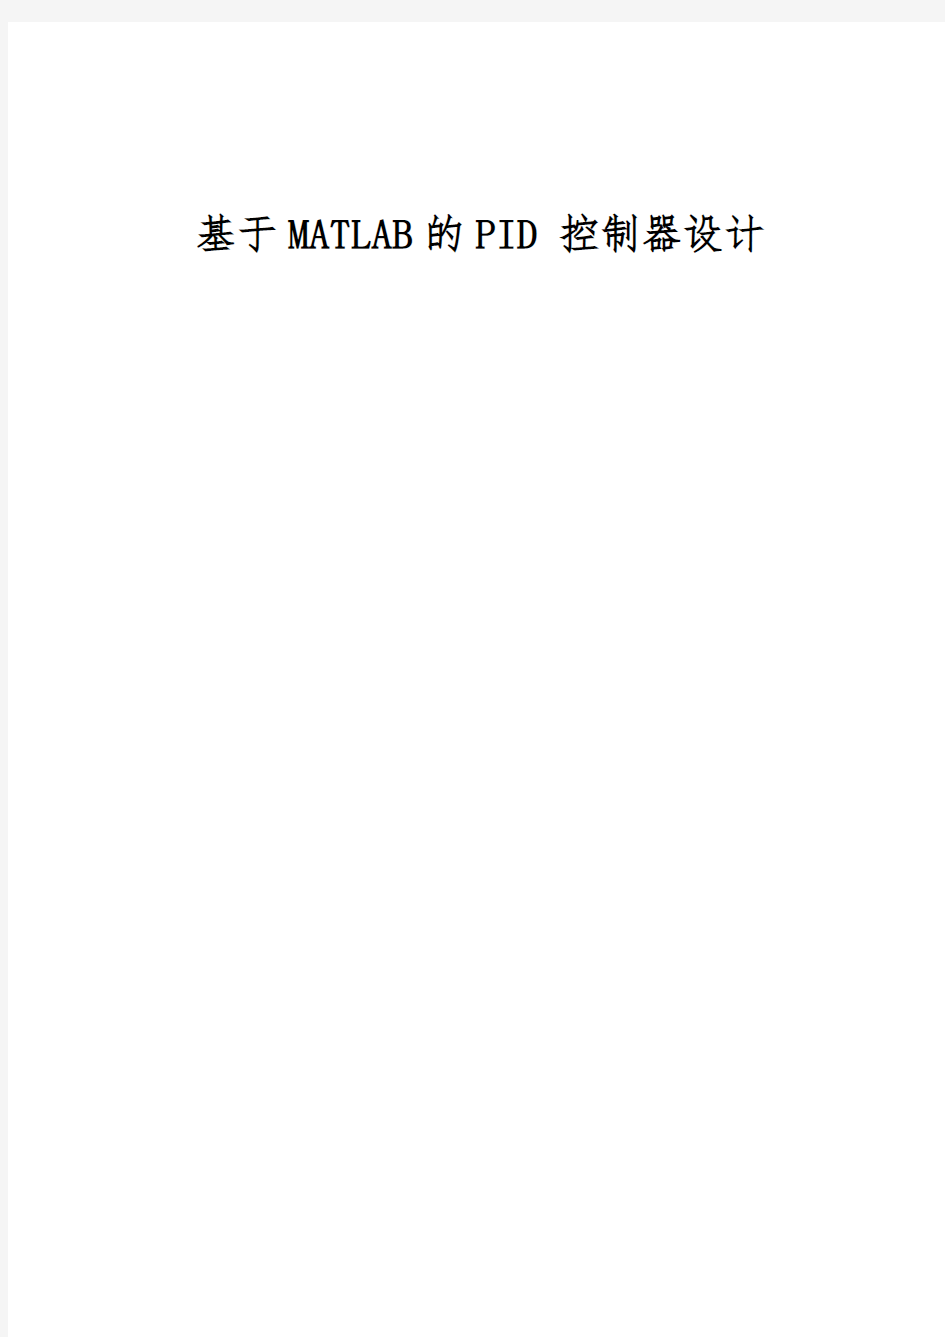 基于MATLAB的PID控制器设计说明